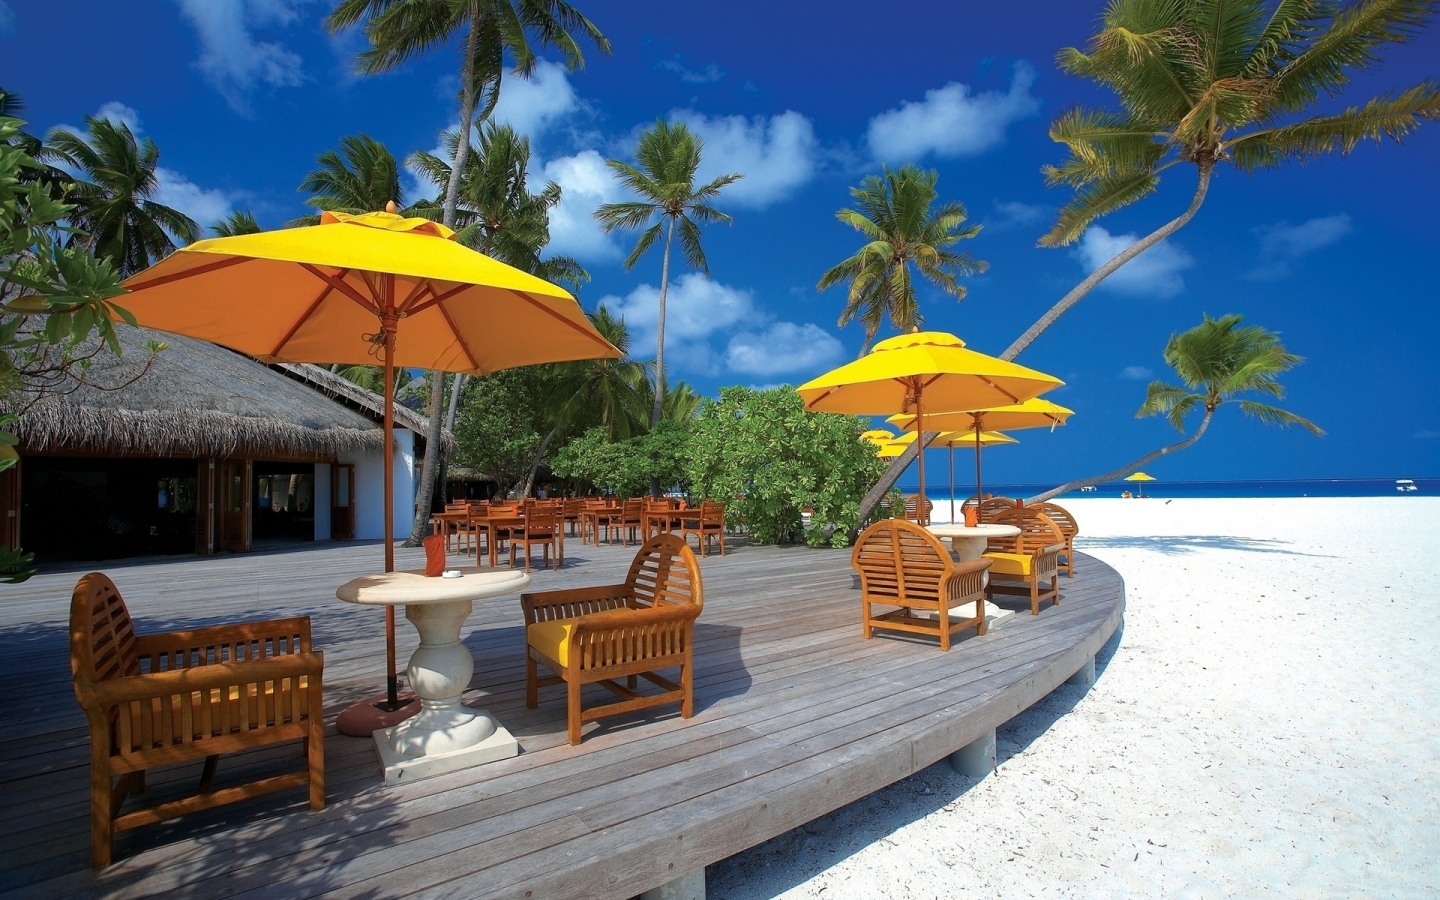 Beach Terrace for 1440 x 900 widescreen resolution